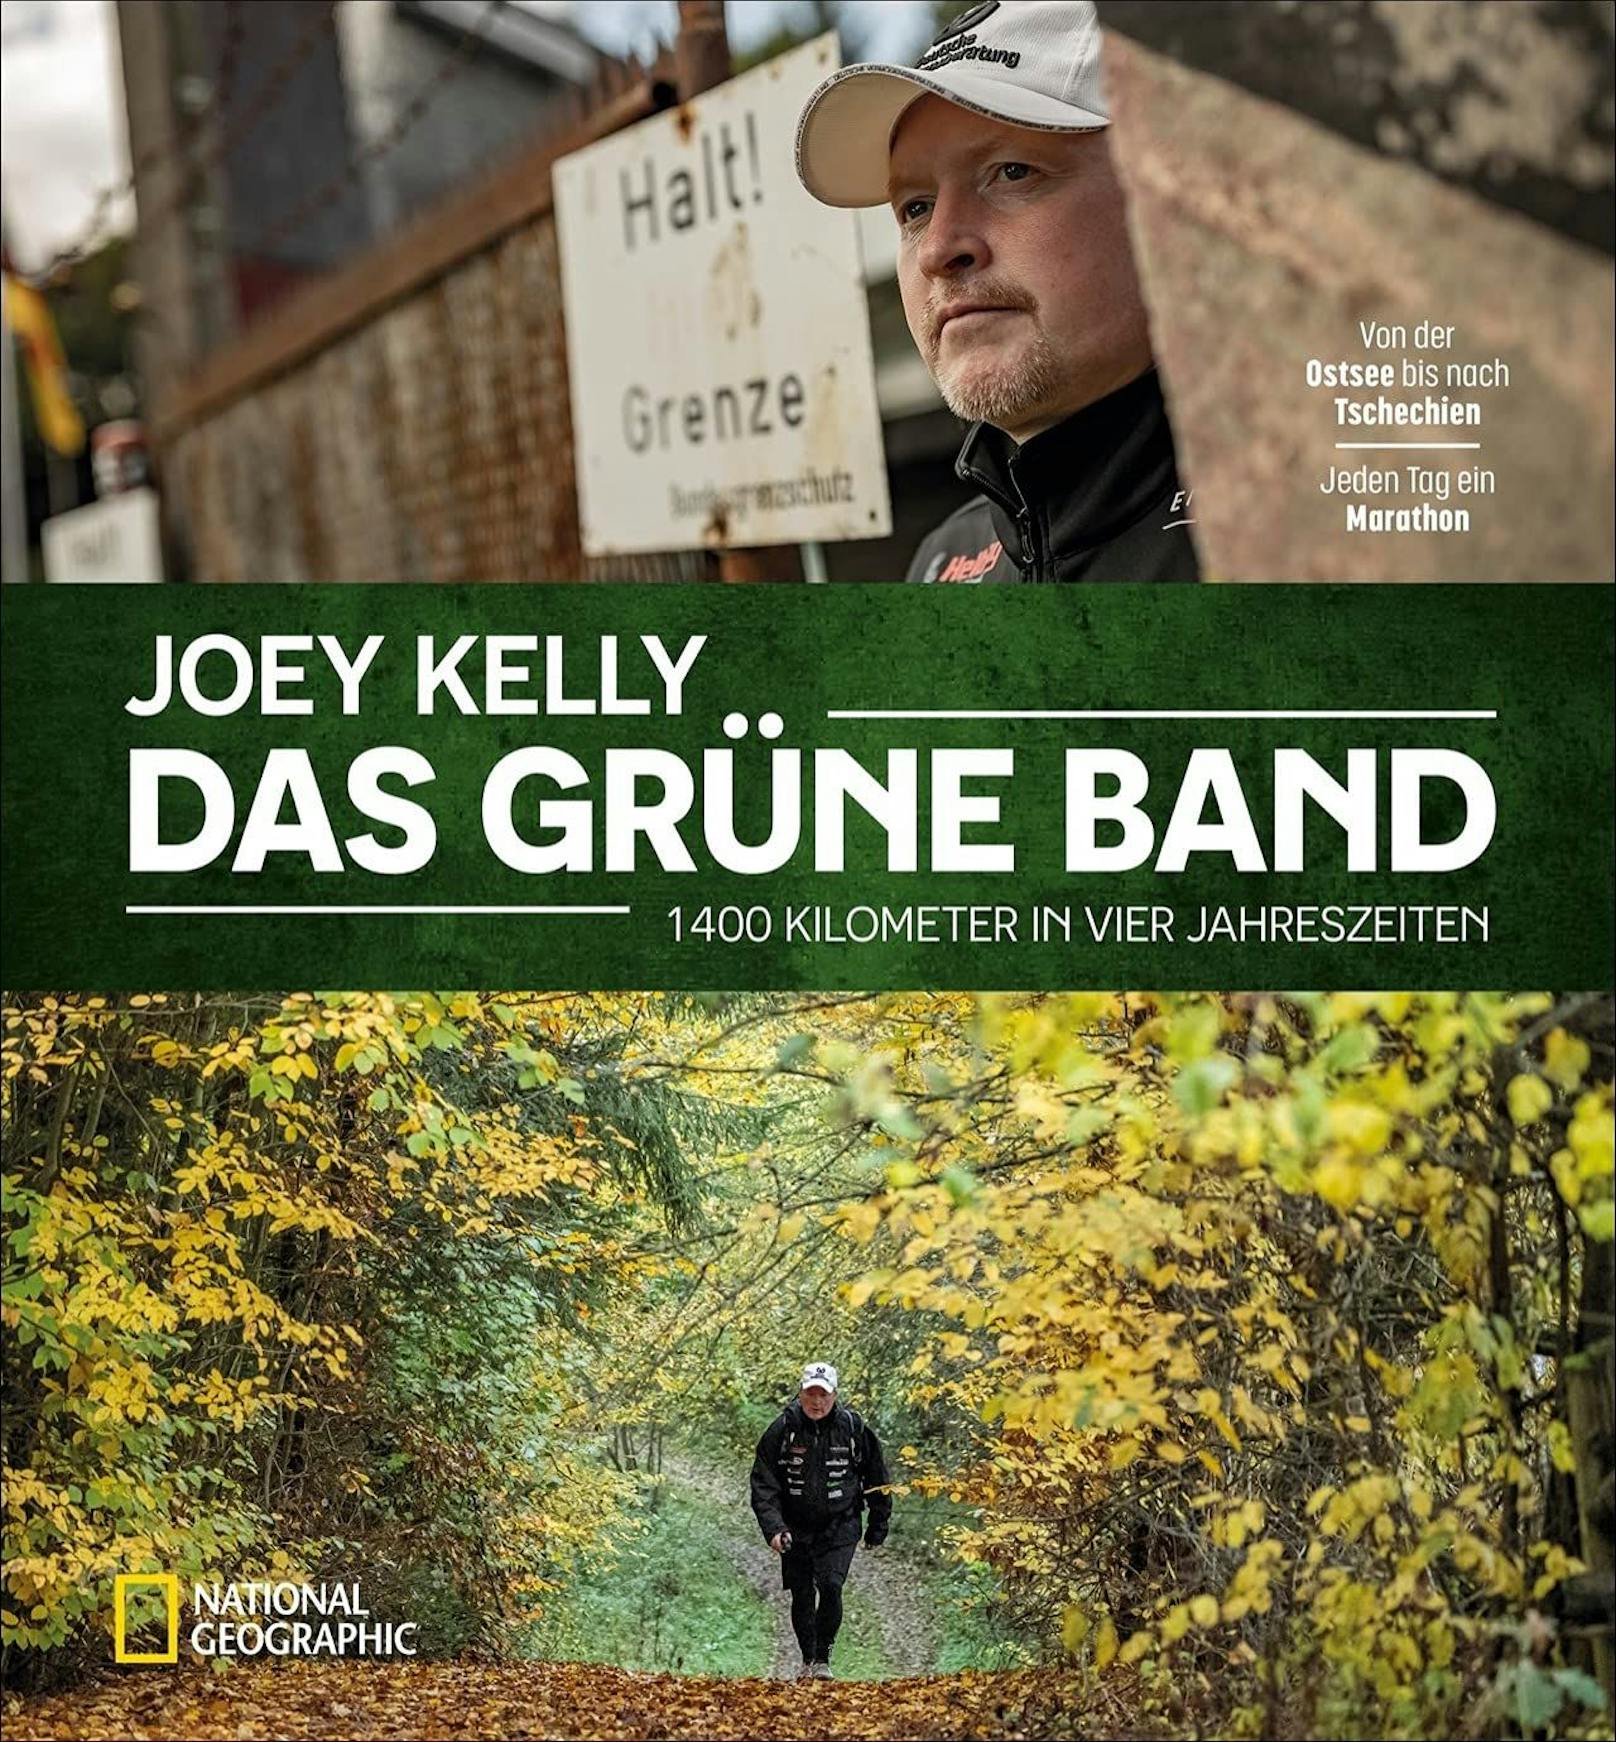 Das Buch zum Extrem-Trip "Das Grüne Band" von und mit Joey Kelly erscheint im Oktober.